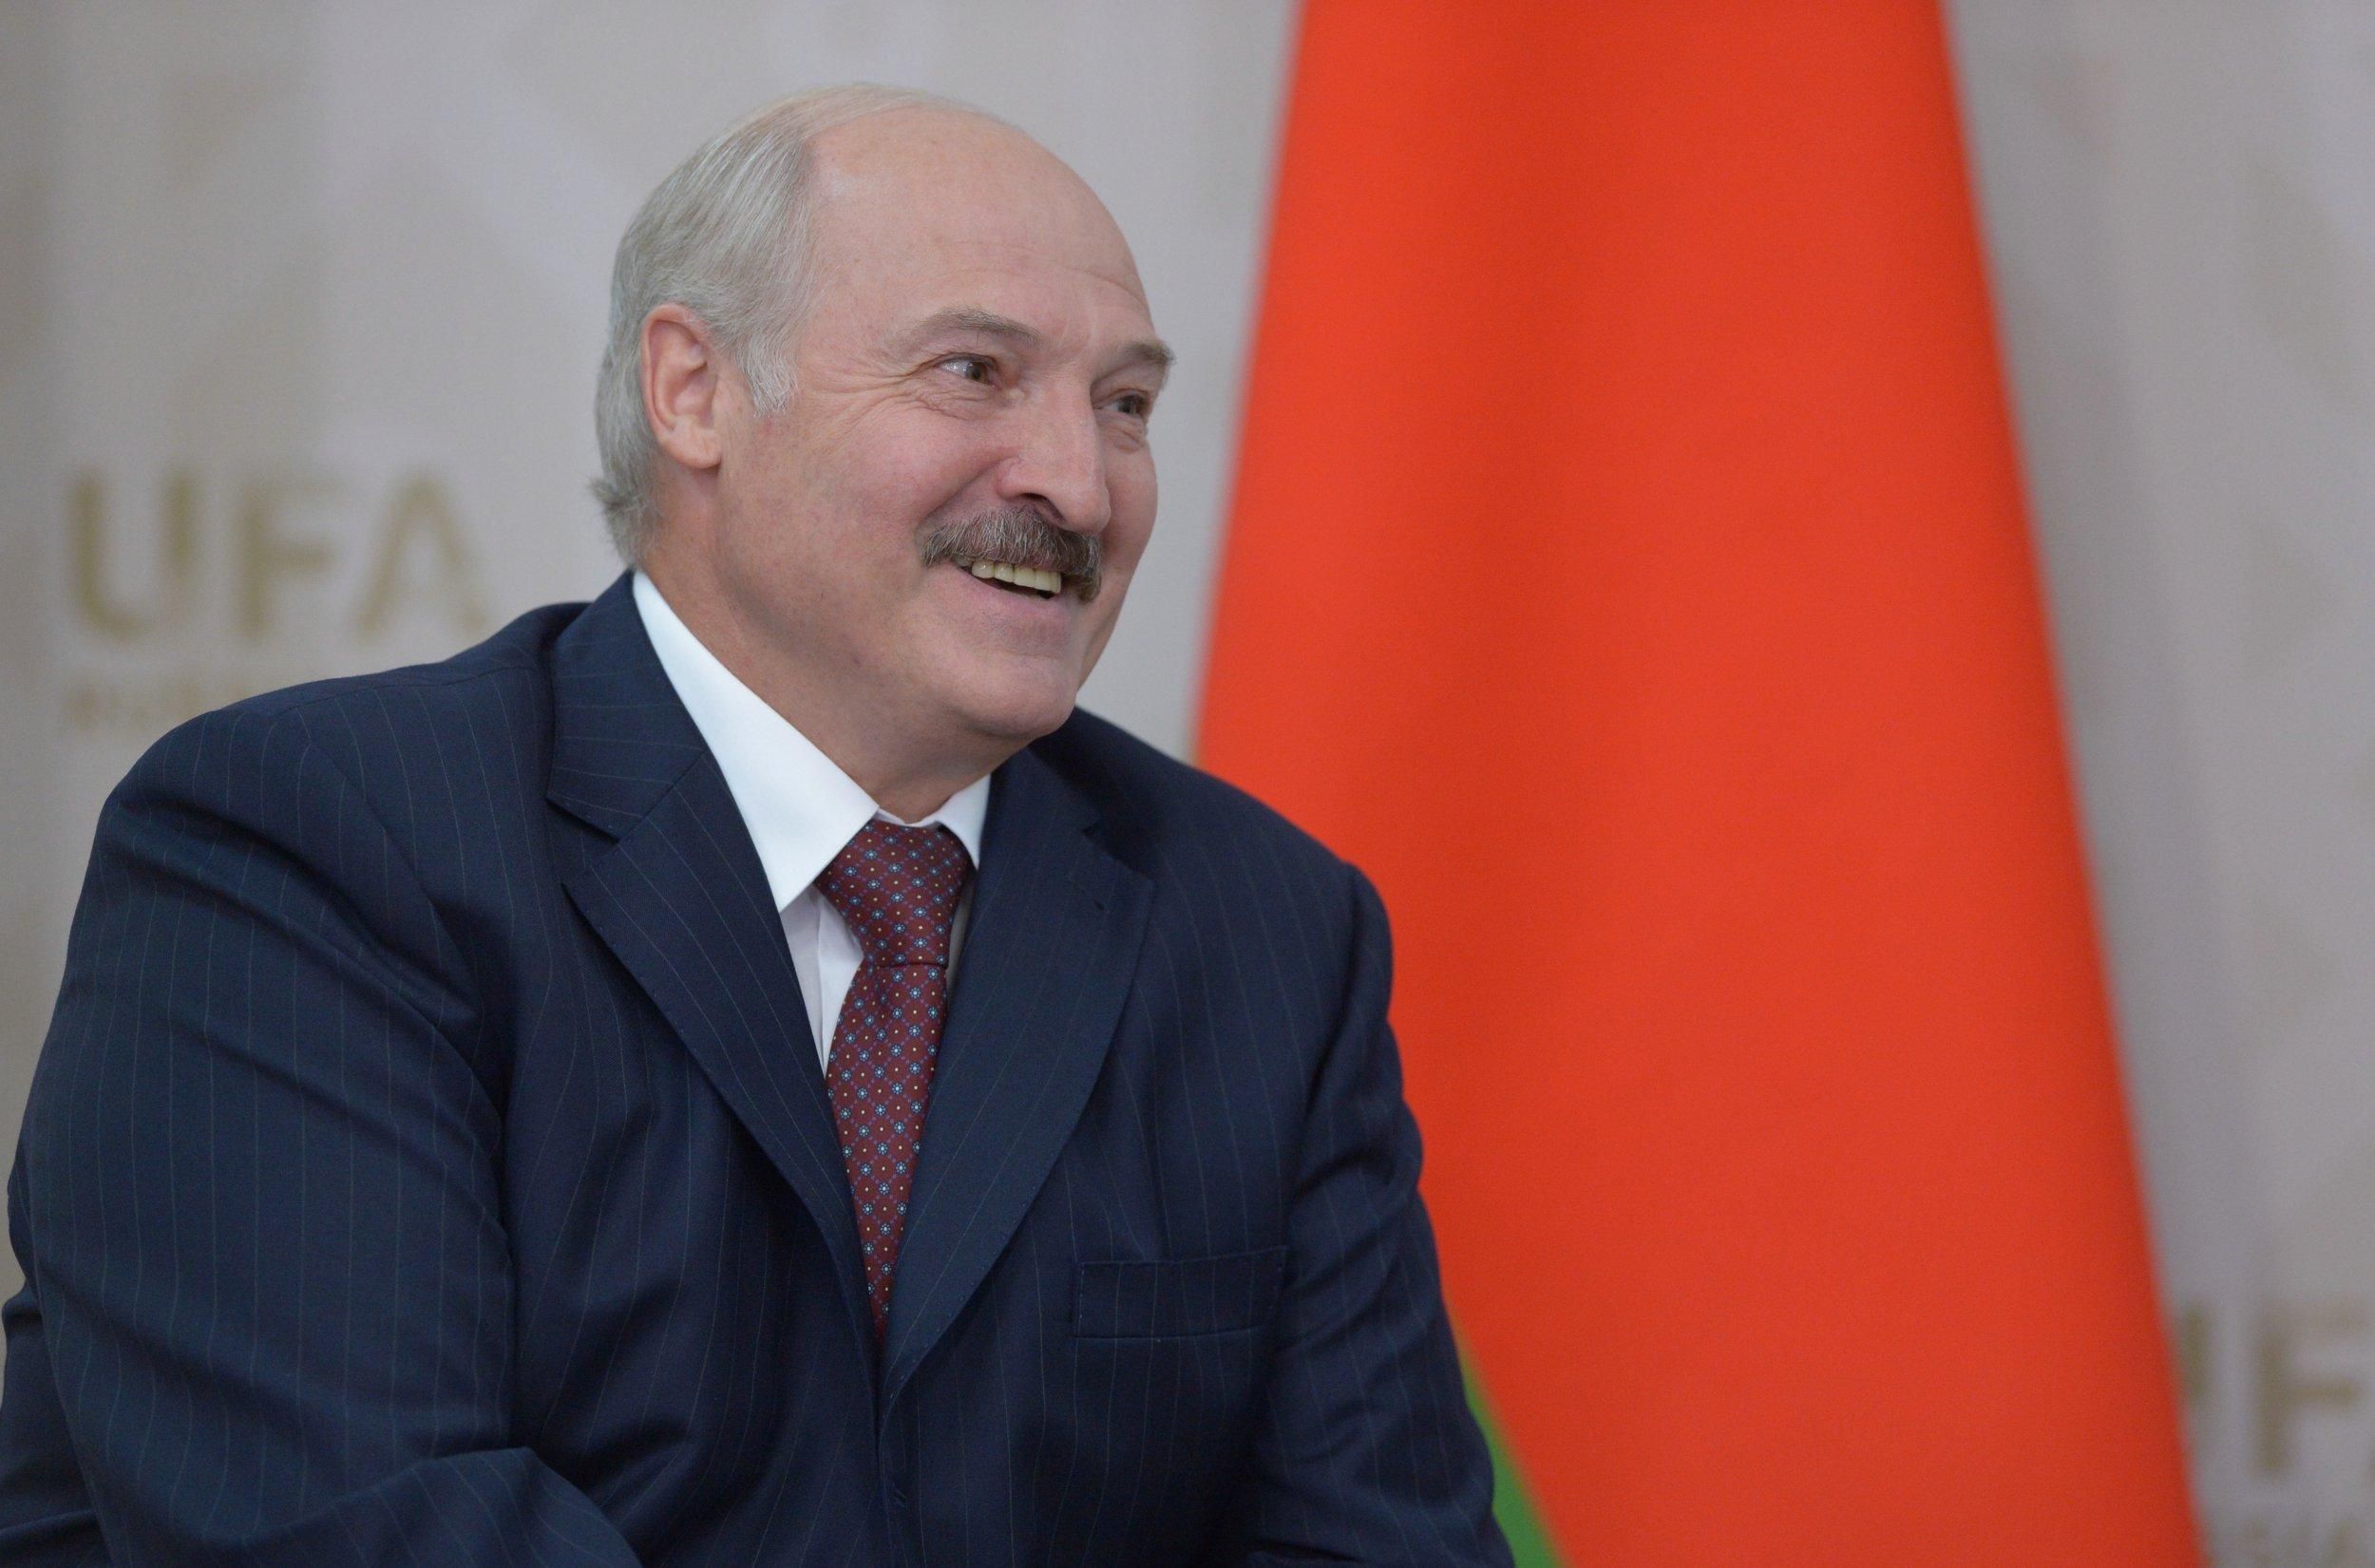 Ще один, окрім Путіна: Лукашенко висловив підтримку венесуельському диктатору Мадуро